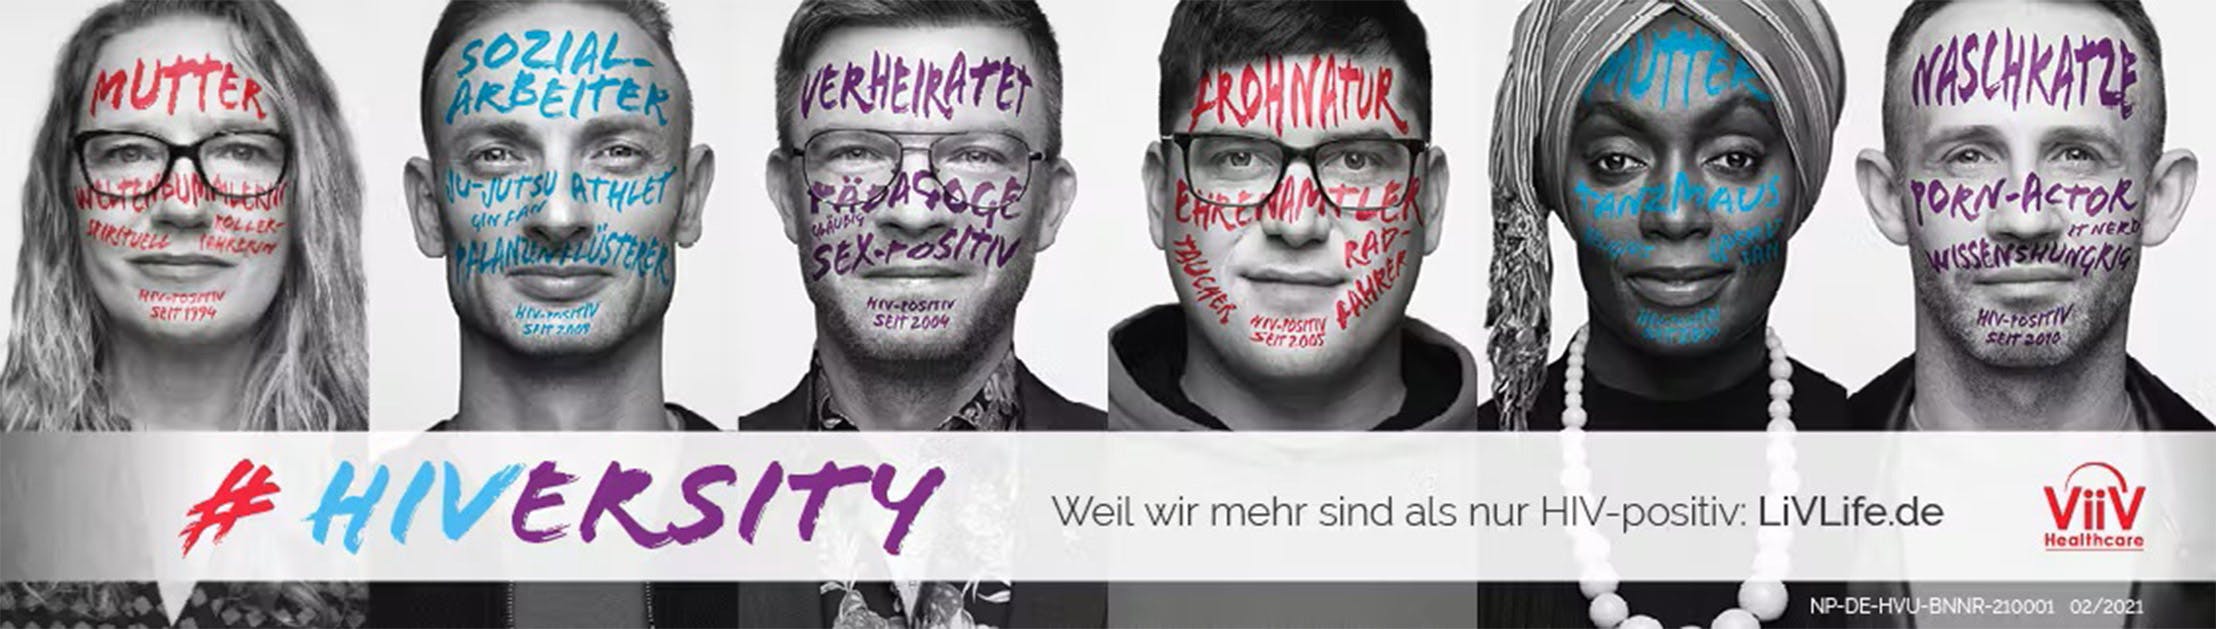 Kampagnenmotiv HIVersity Portraitbild von allen HIVersity Gesichtern mit ihren persönlichen Botschaften als Schrift auf dem Gesicht